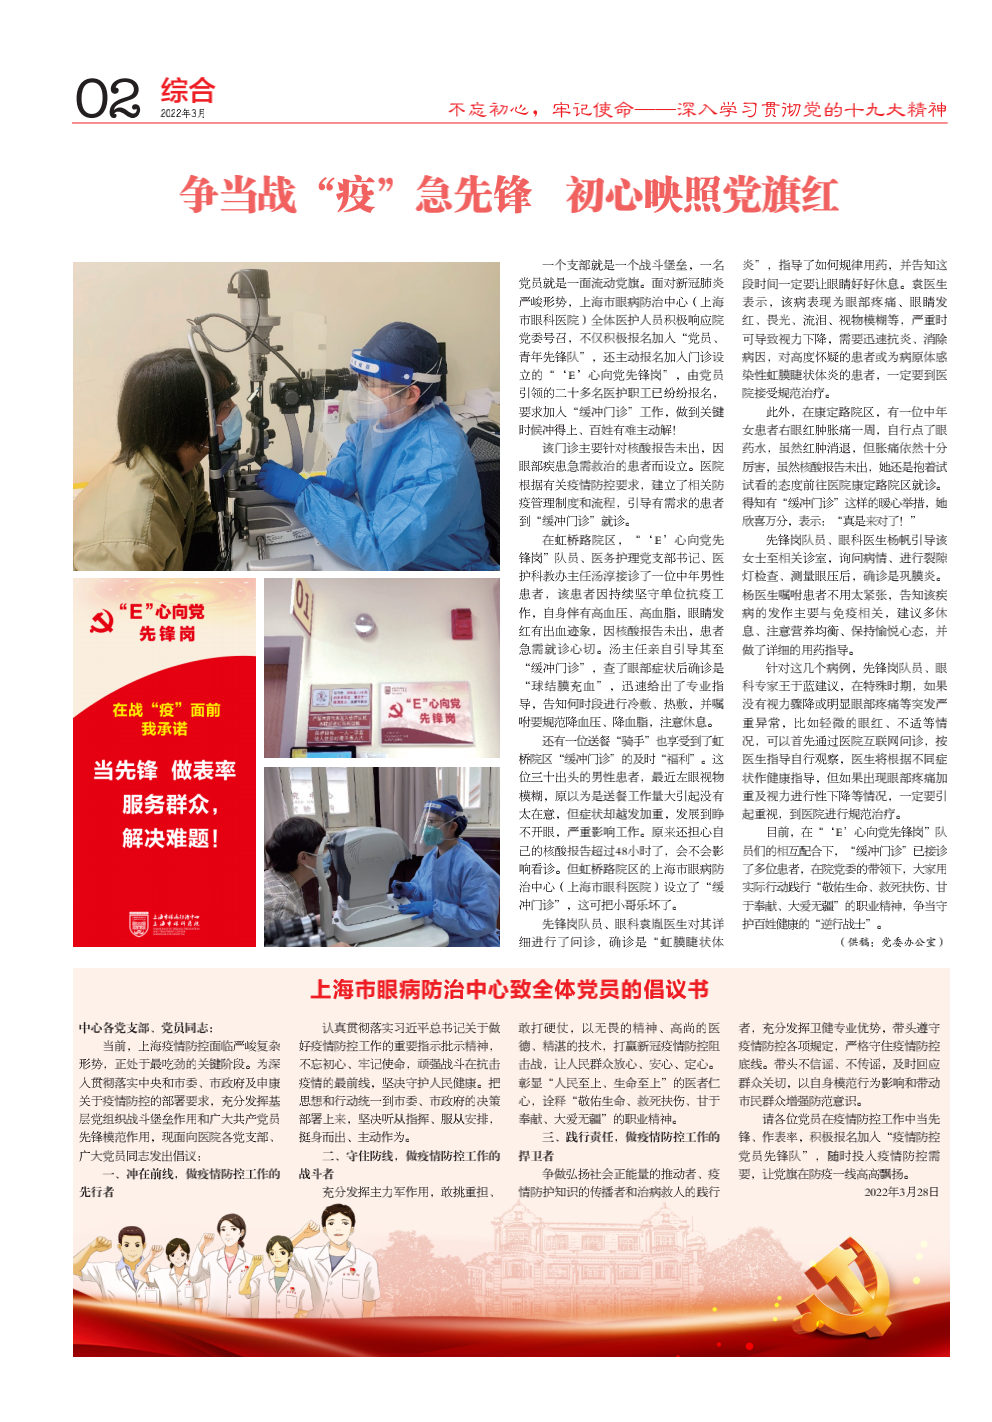 上海市眼病防治中心致全体党员的倡议书